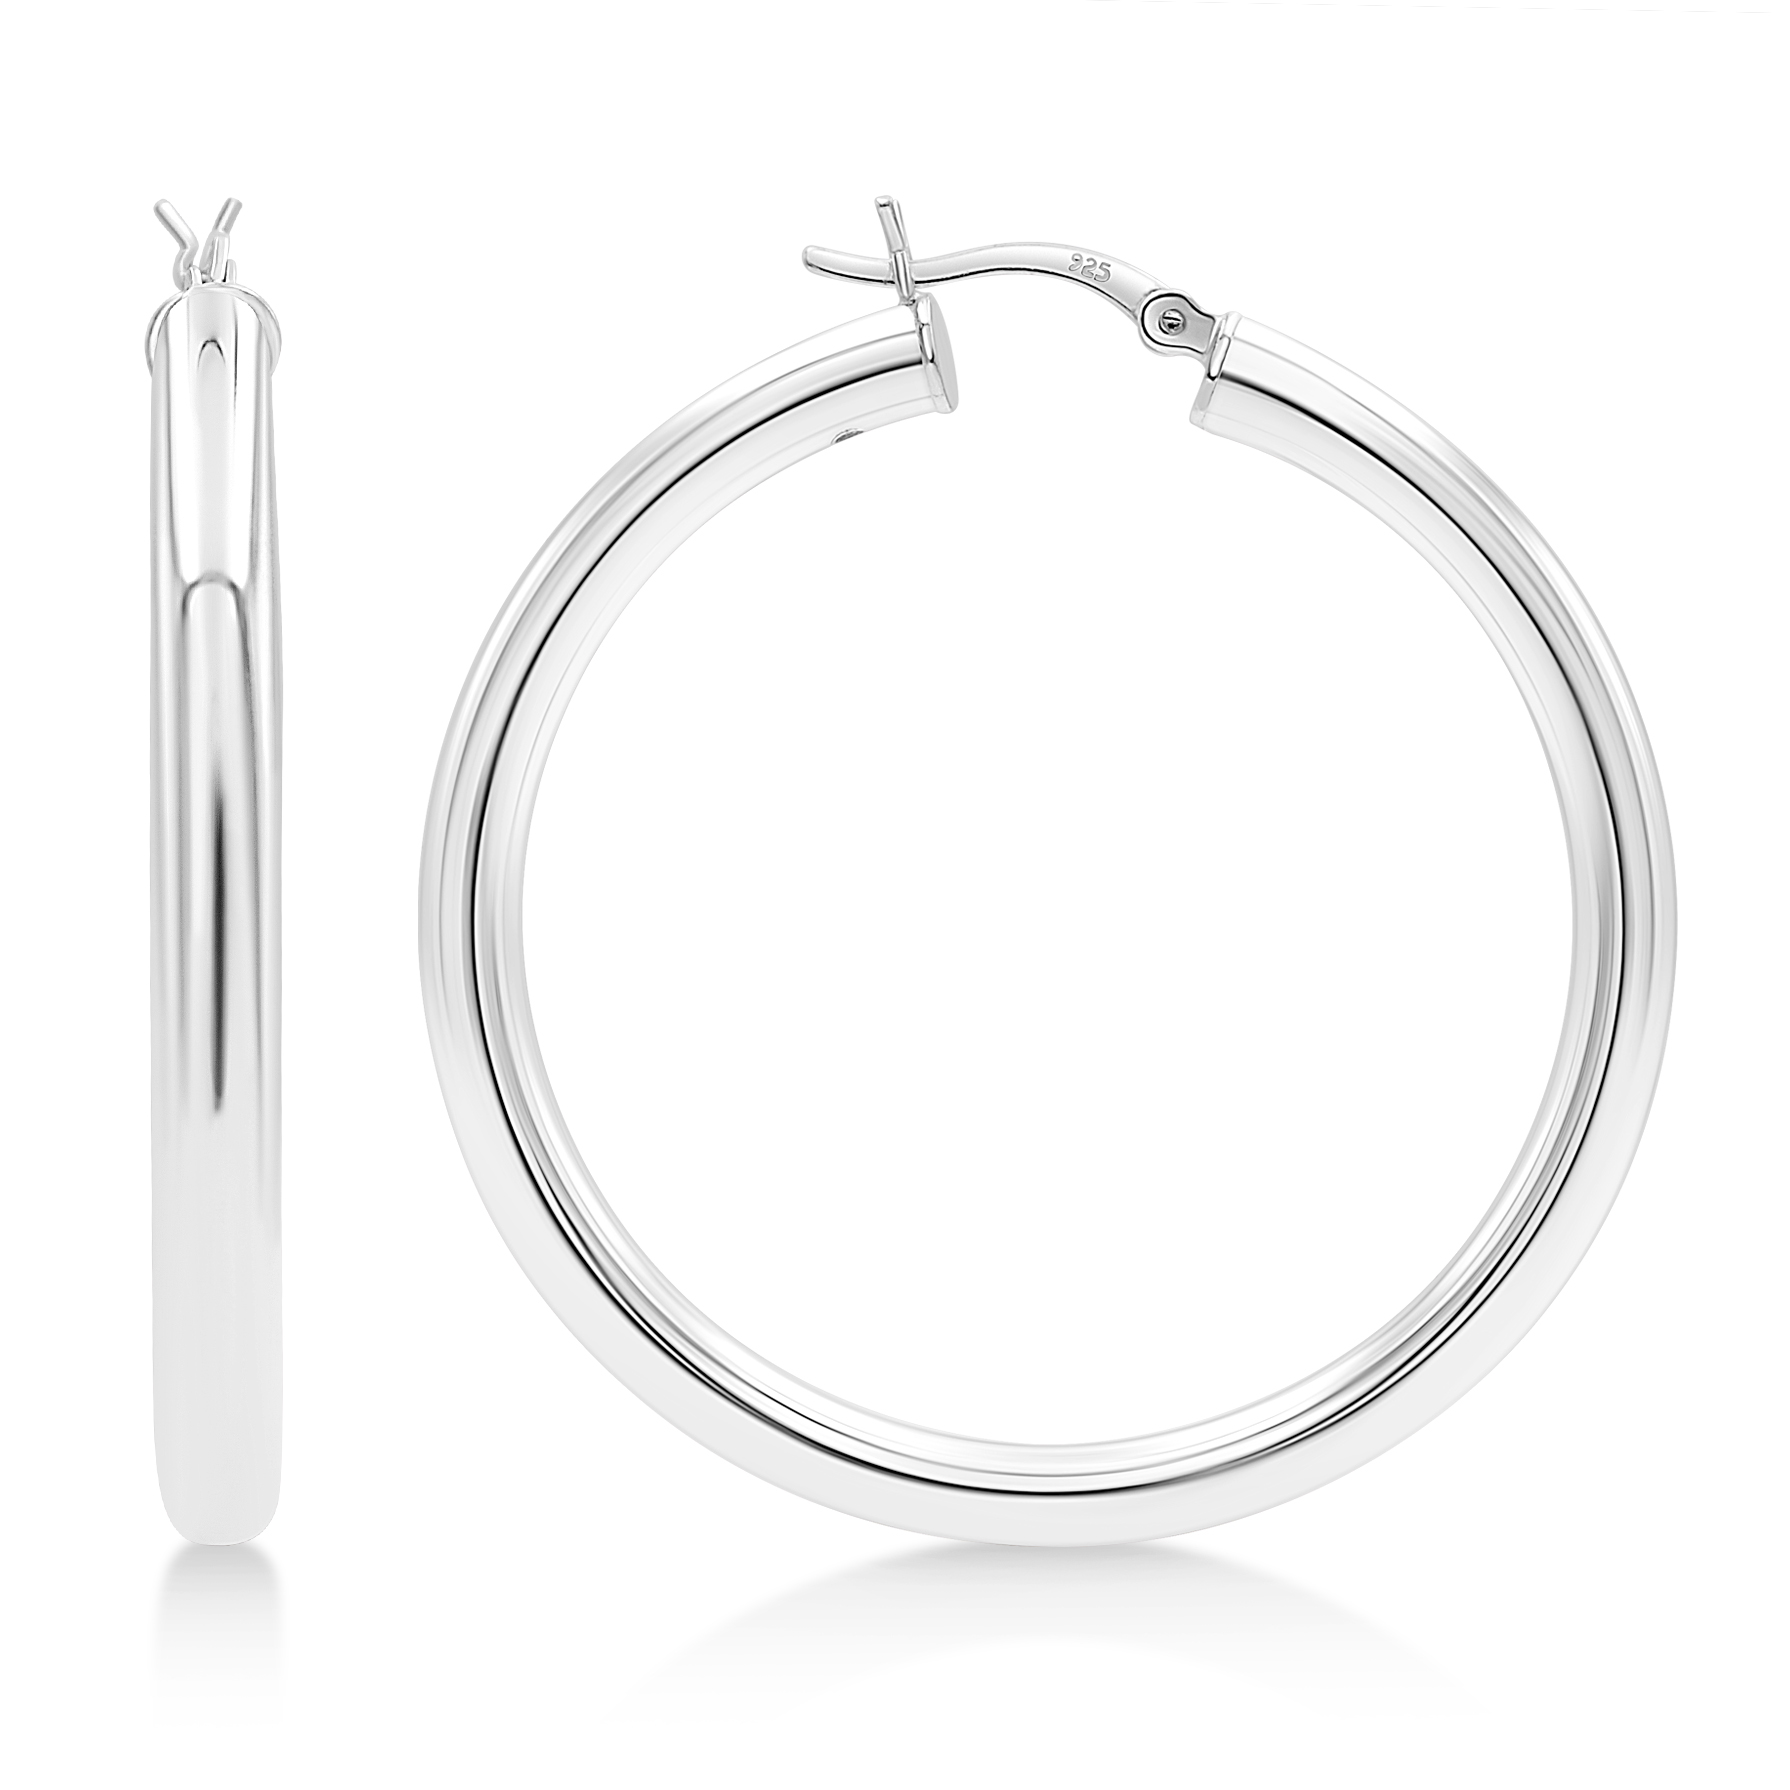 Thin Silver Hoops - Hoop Earrings - Simple Hoops For Women